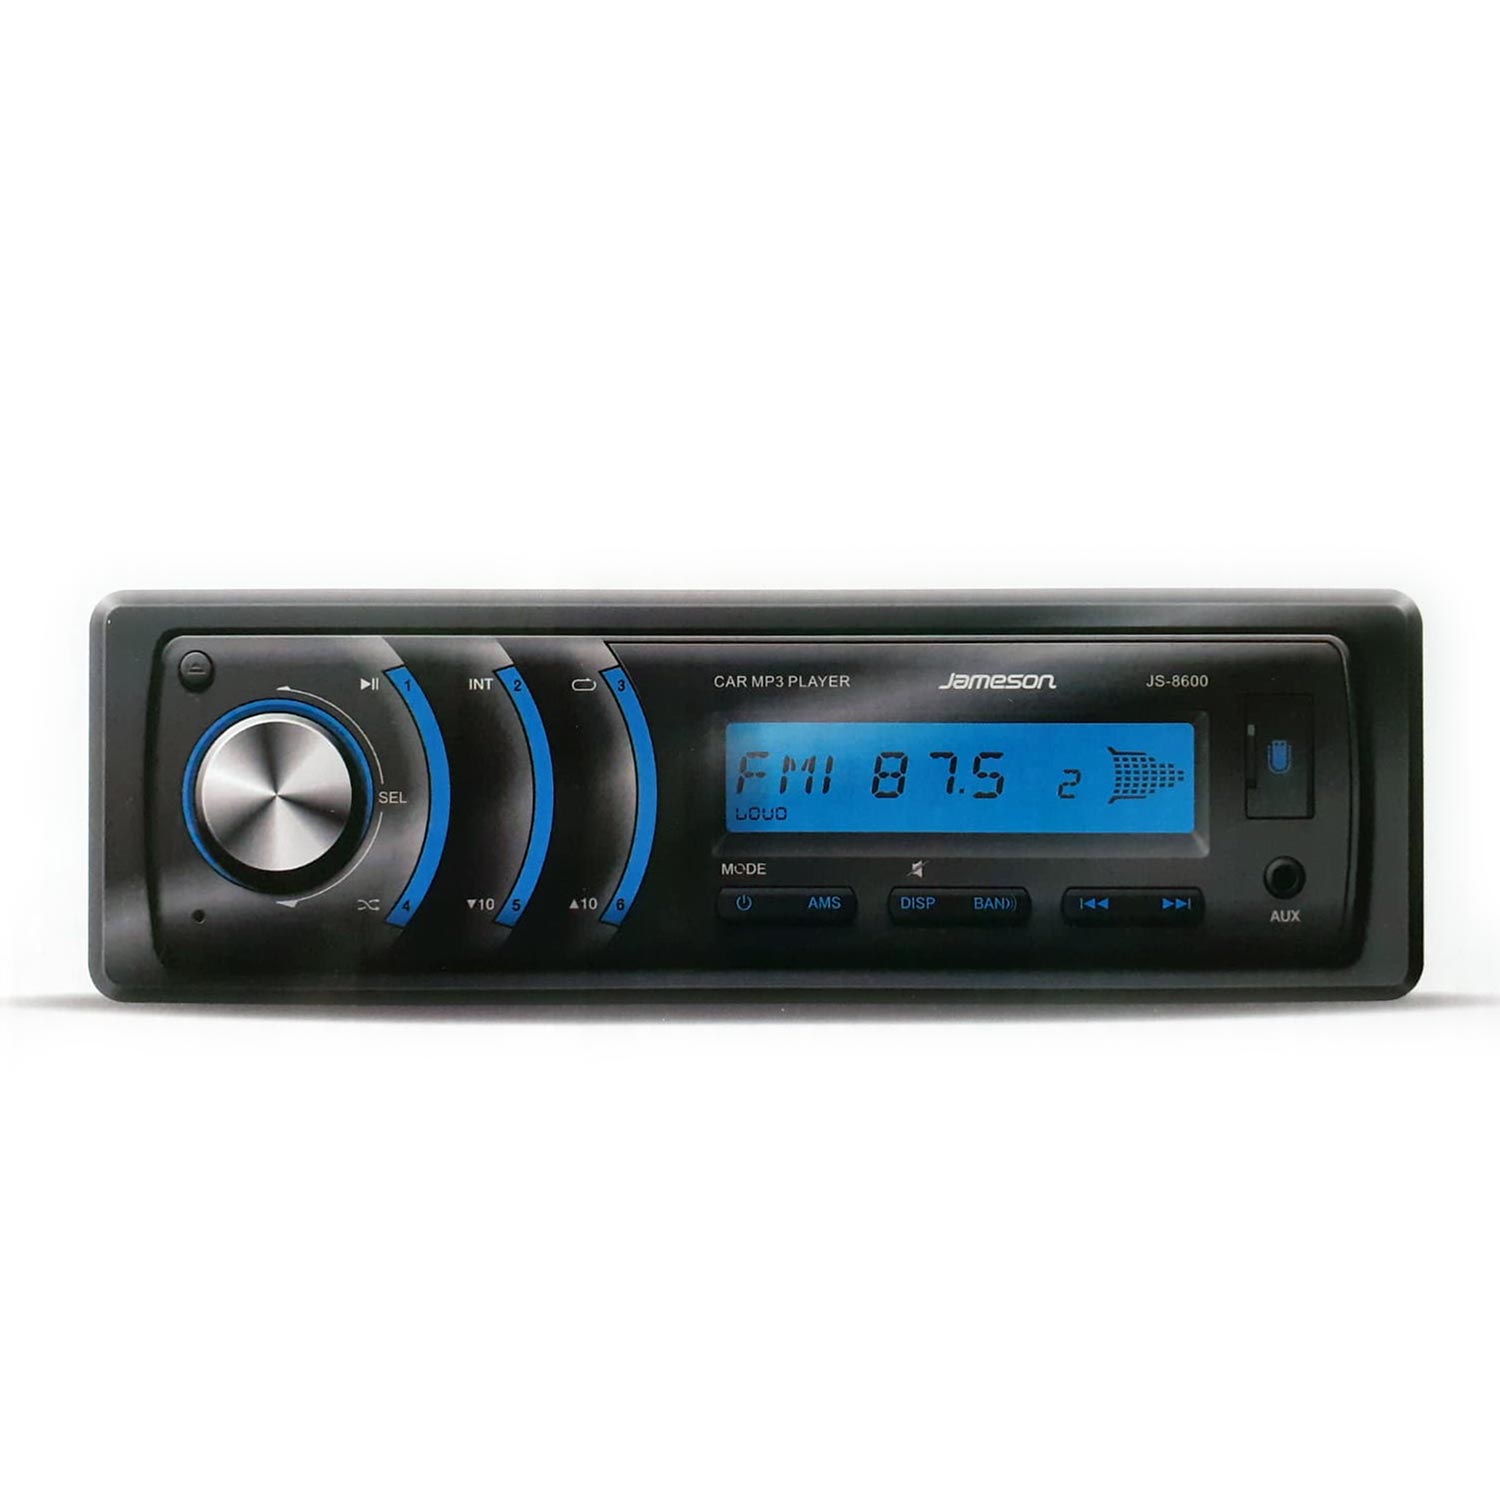 OTO TEYP USB/SD/FM DİJİTAL EKRAN JAMESON 4X50W JS-8600